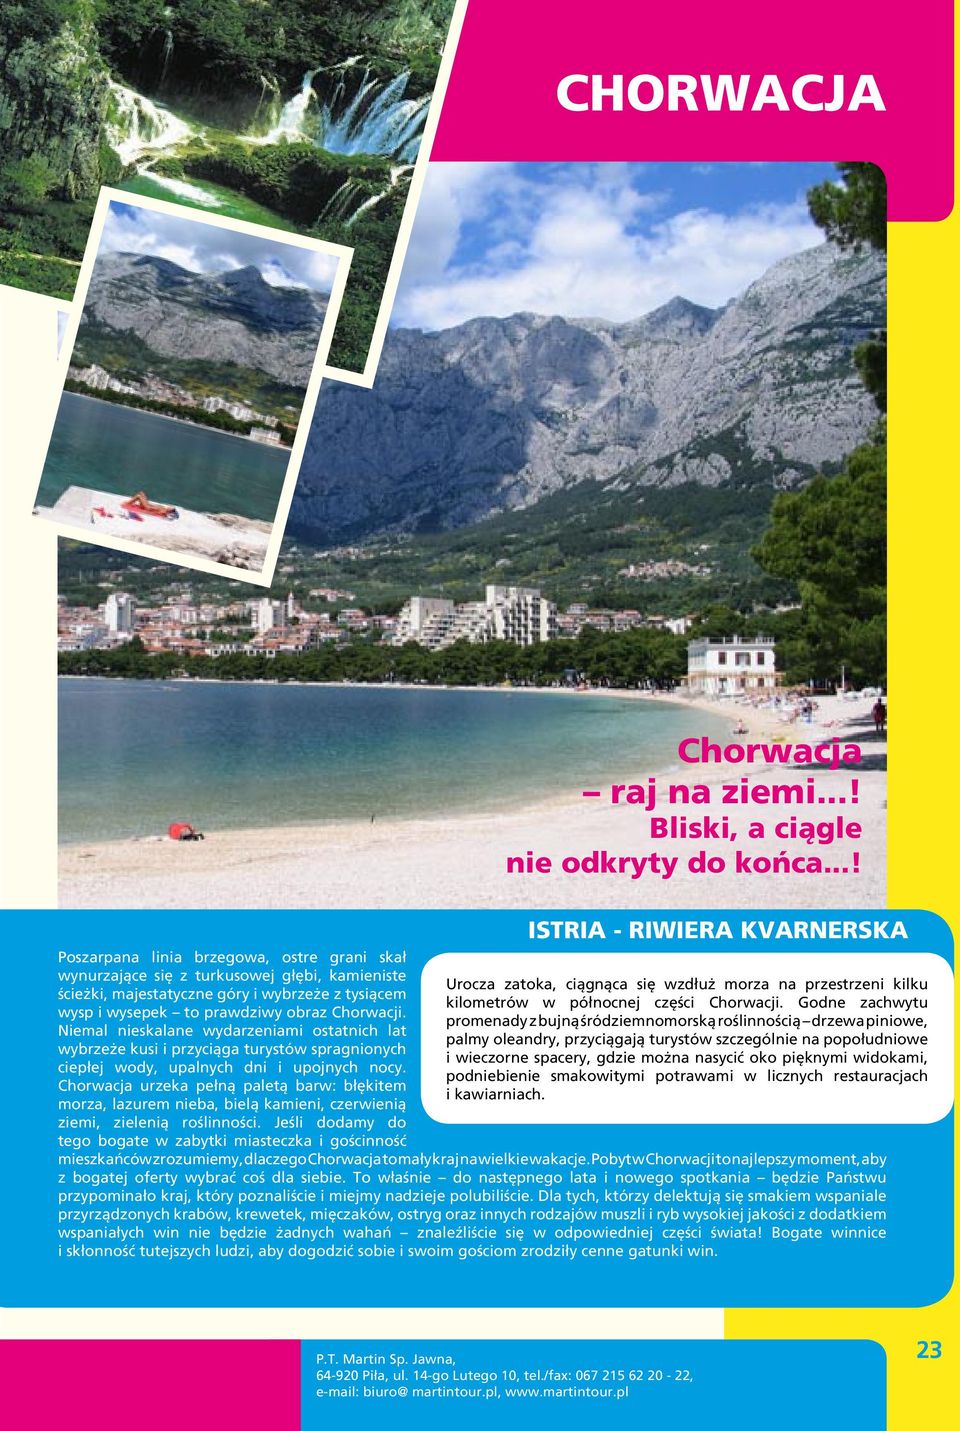 Chorwacja urzeka pełną paletą barw: błękitem morza, lazurem nieba, bielą kamieni, czerwienią ziemi, zielenią roślinności.